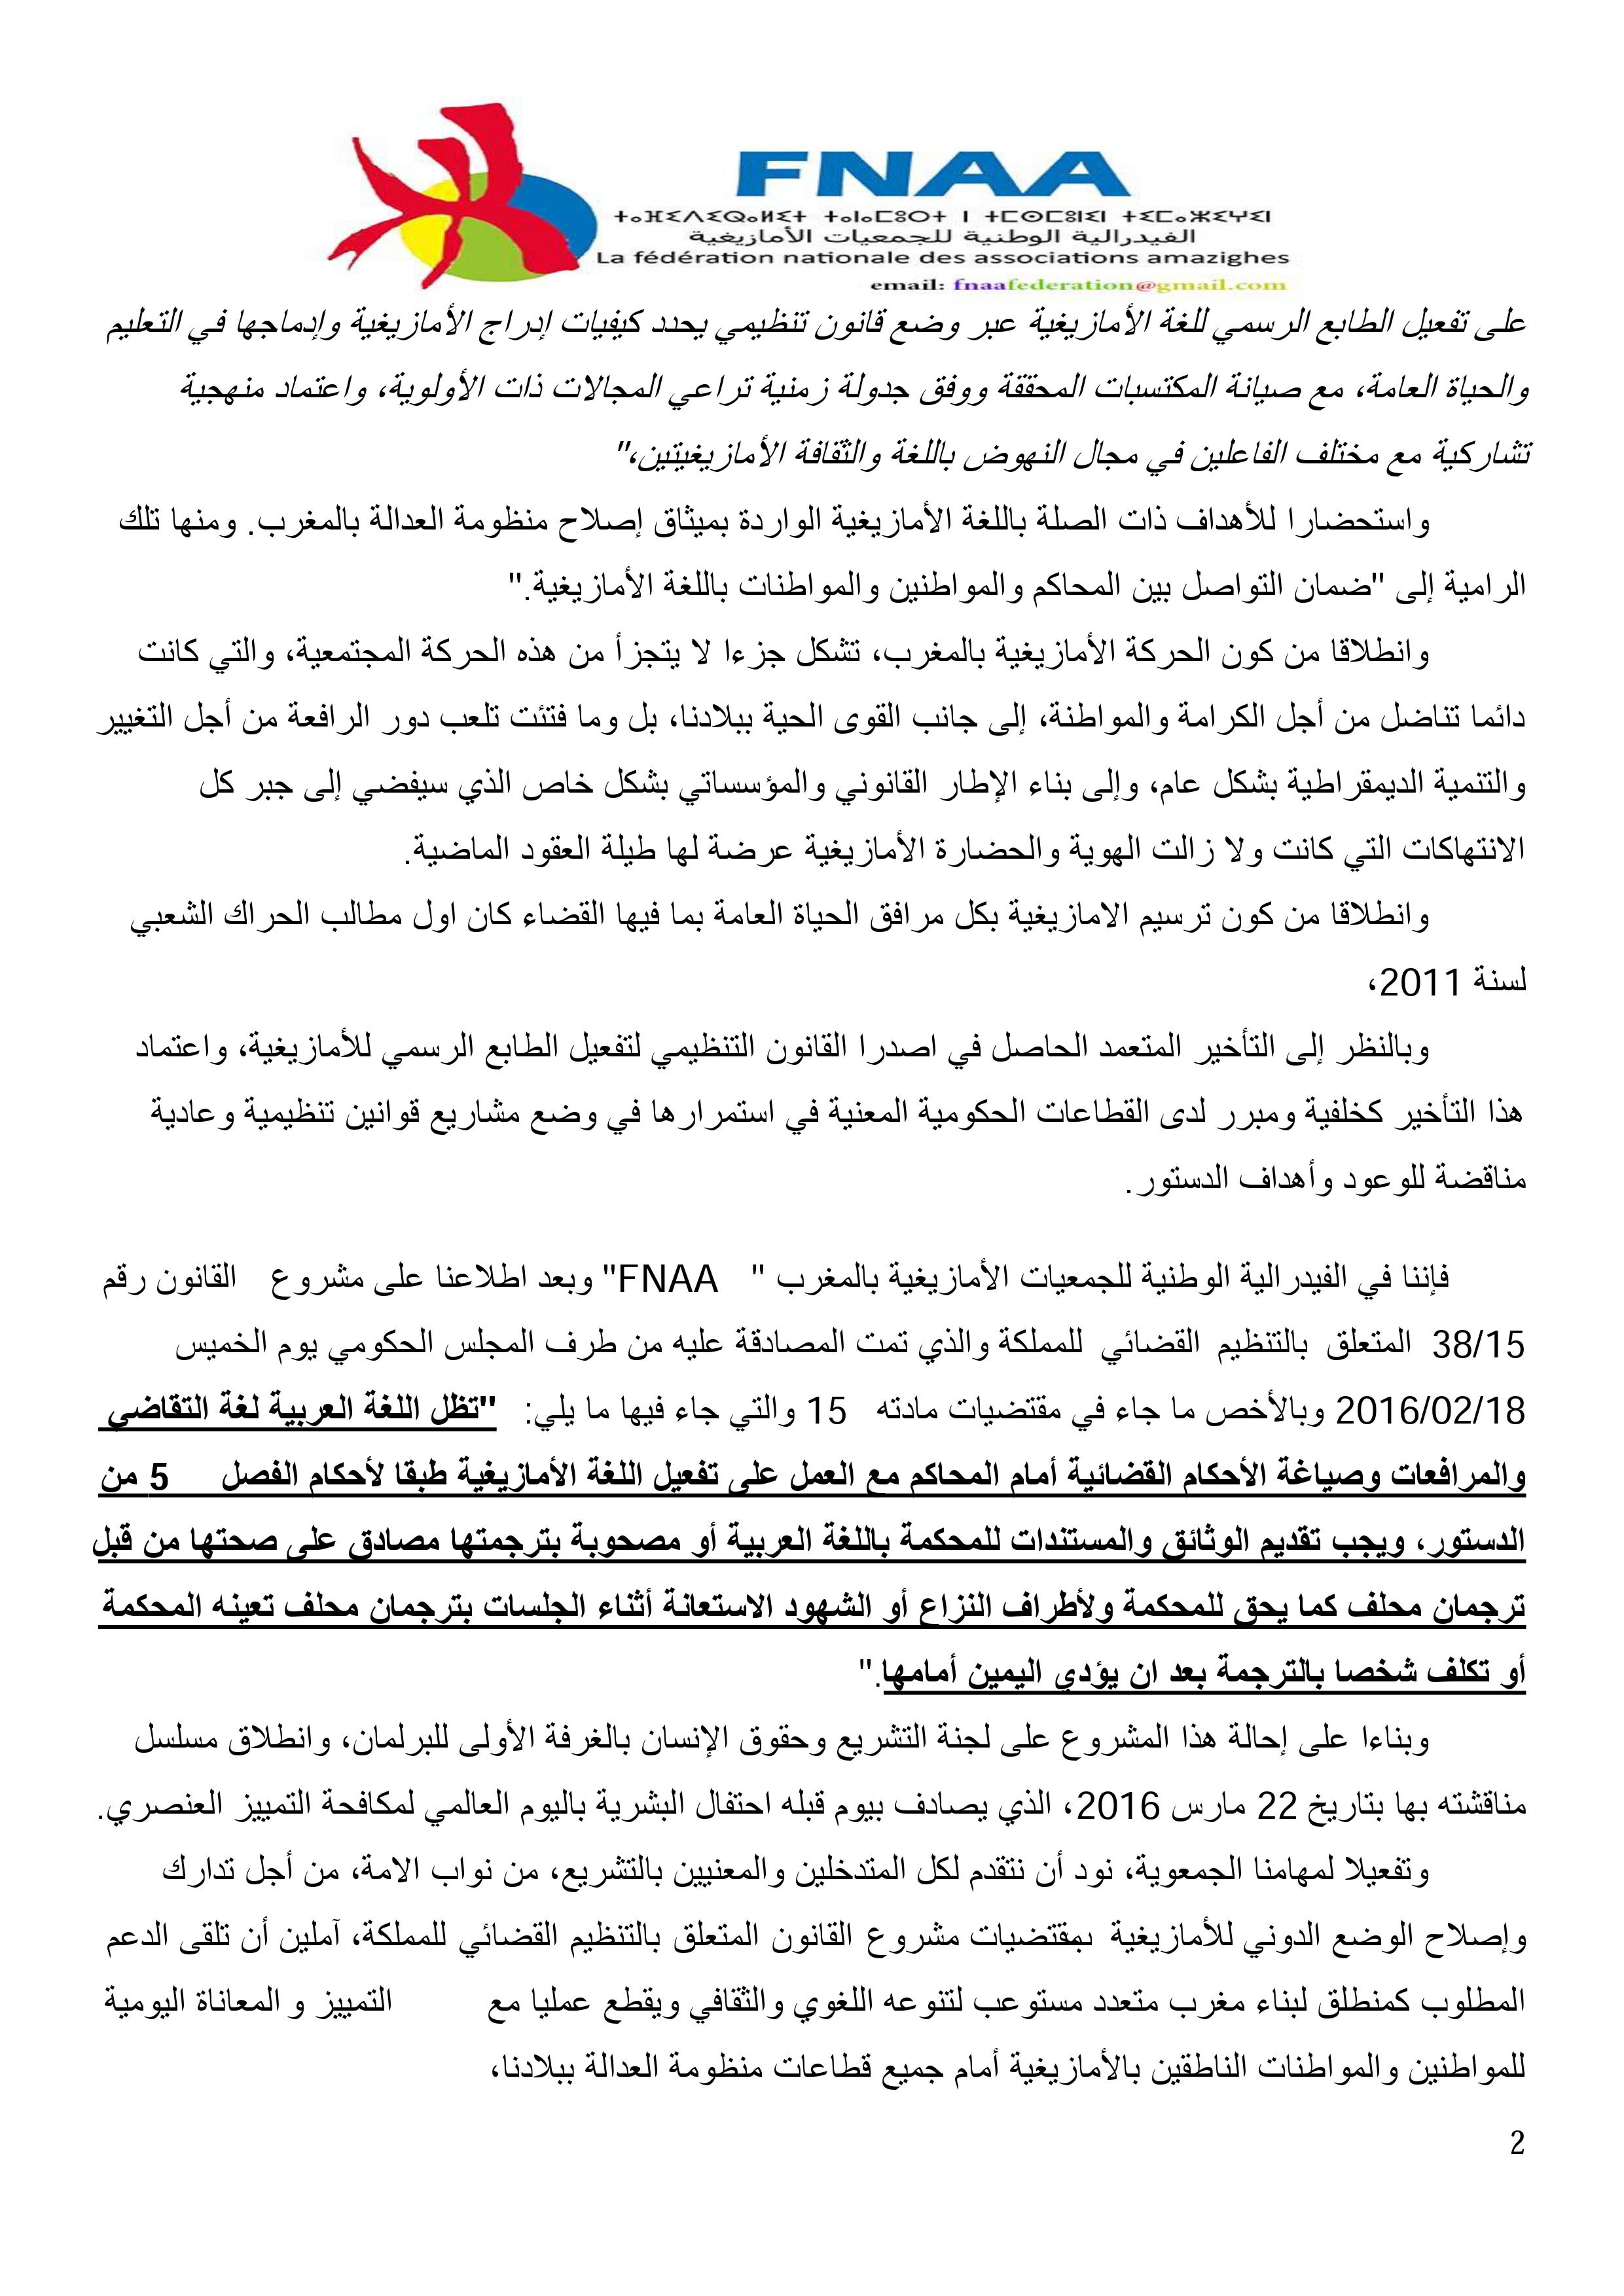 مذكرة ترافعية للفيدرالية الوطنية للجمعيات الأمازيغية بالمغرب، حول وضعية  الأمازيغية بمشروع القانون رقم 15/38  المتعلق بالتنظيم القضائي للمملكة